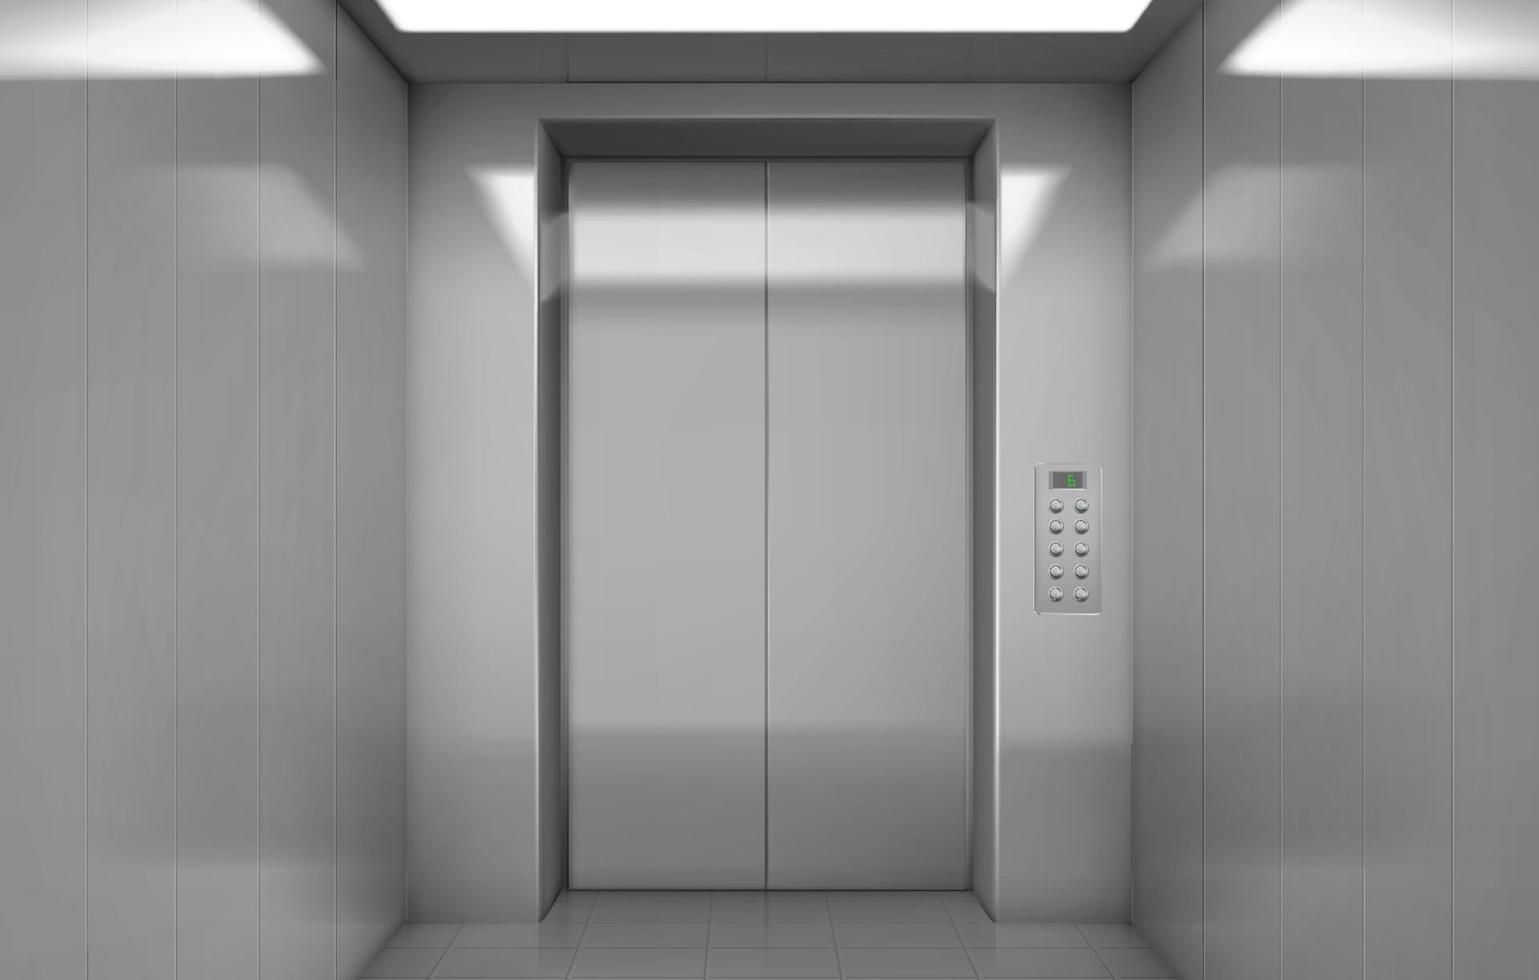 cabine de elevador vazia com portas de aço fechadas vetor